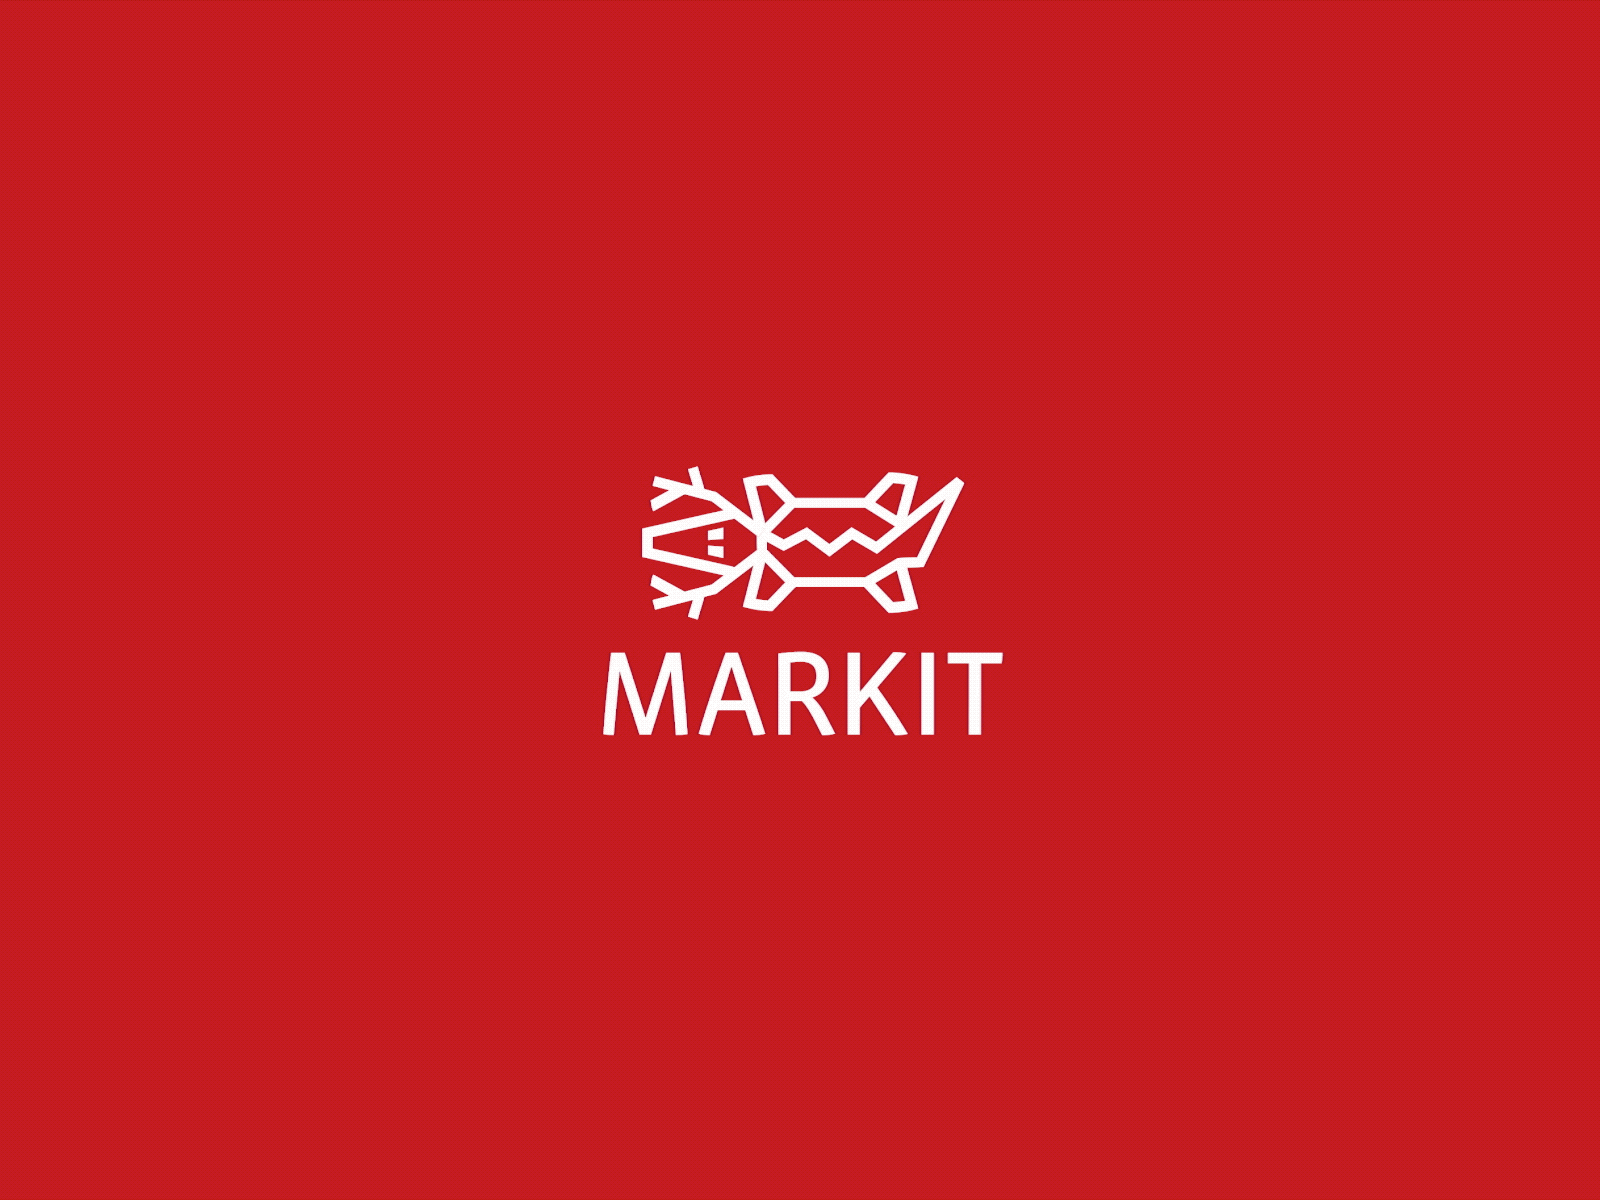 Markit